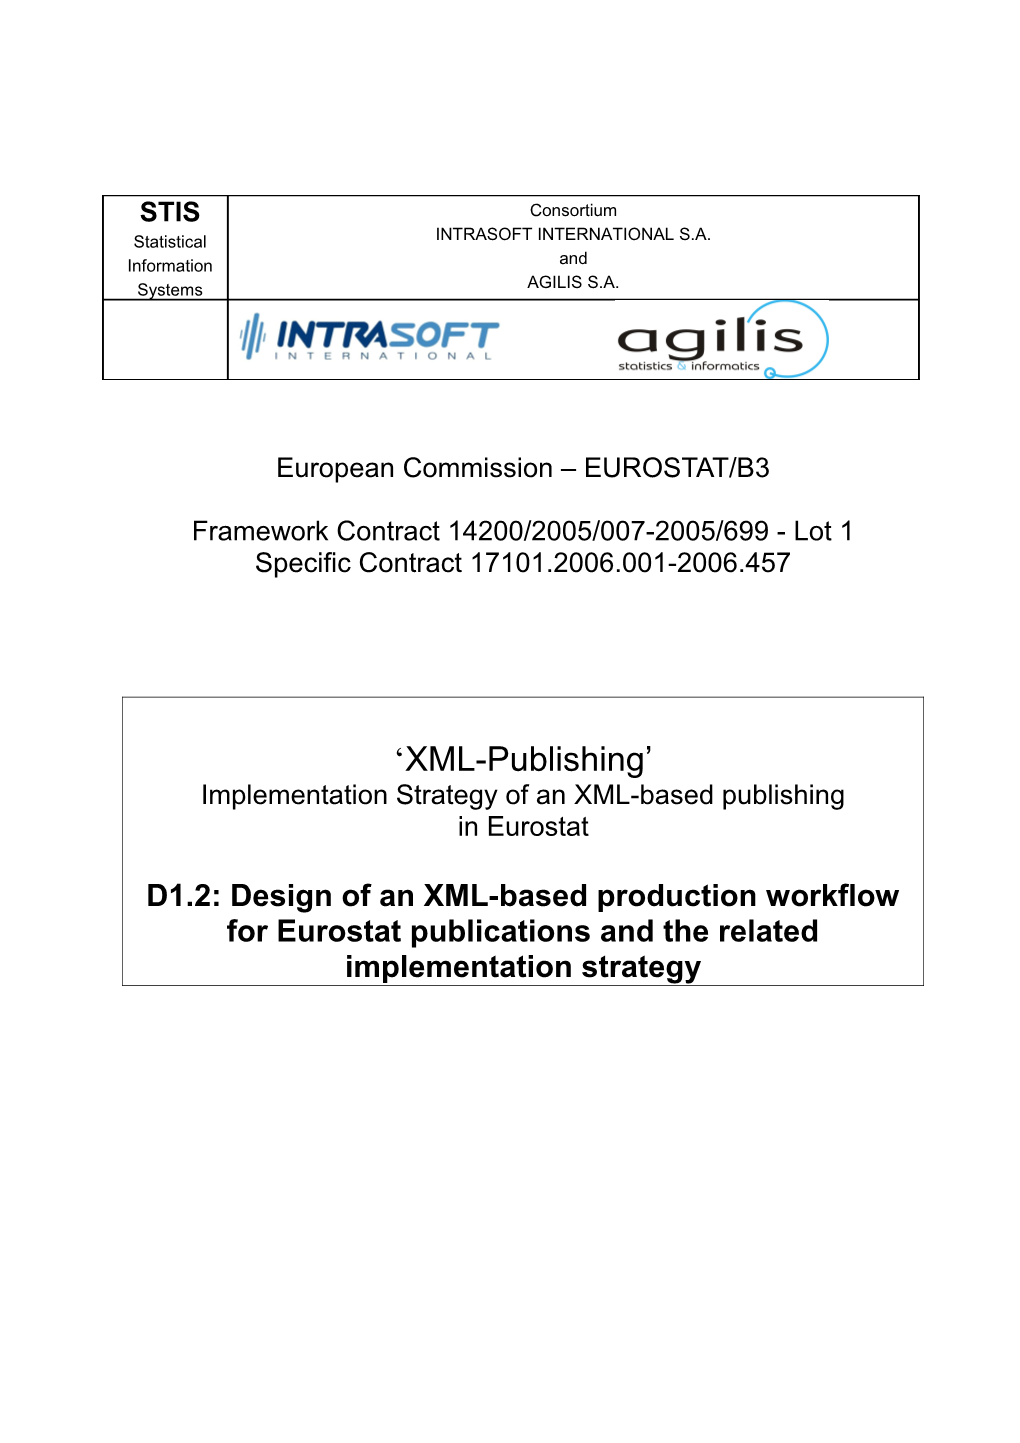 XML-Publishing - Implementation Strategy